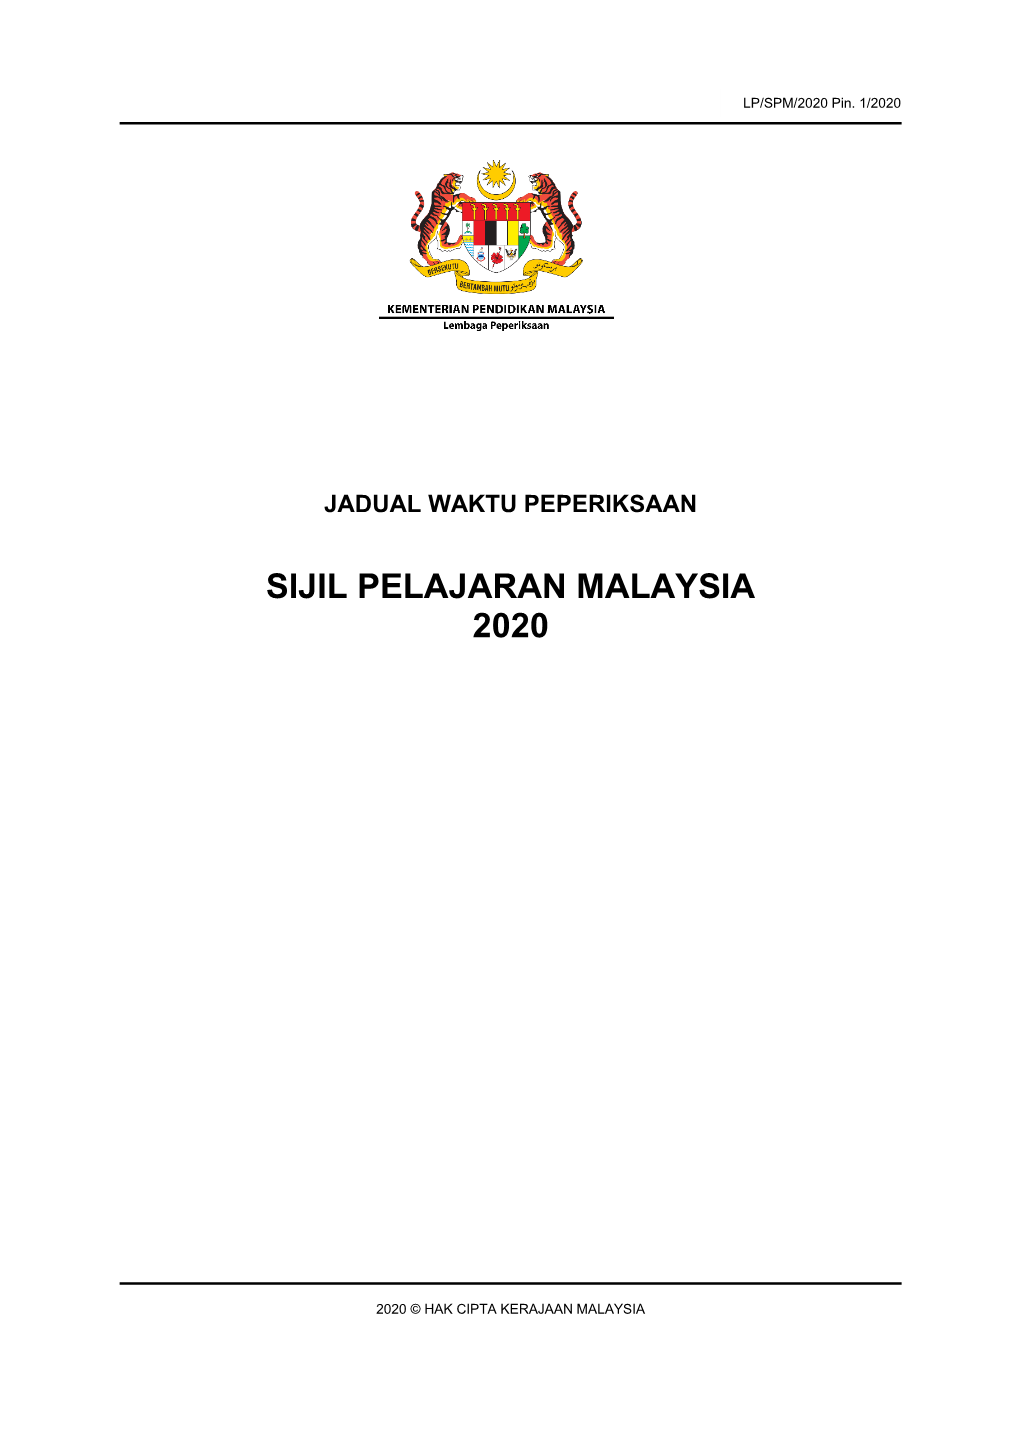 Sijil Pelajaran Malaysia 2020